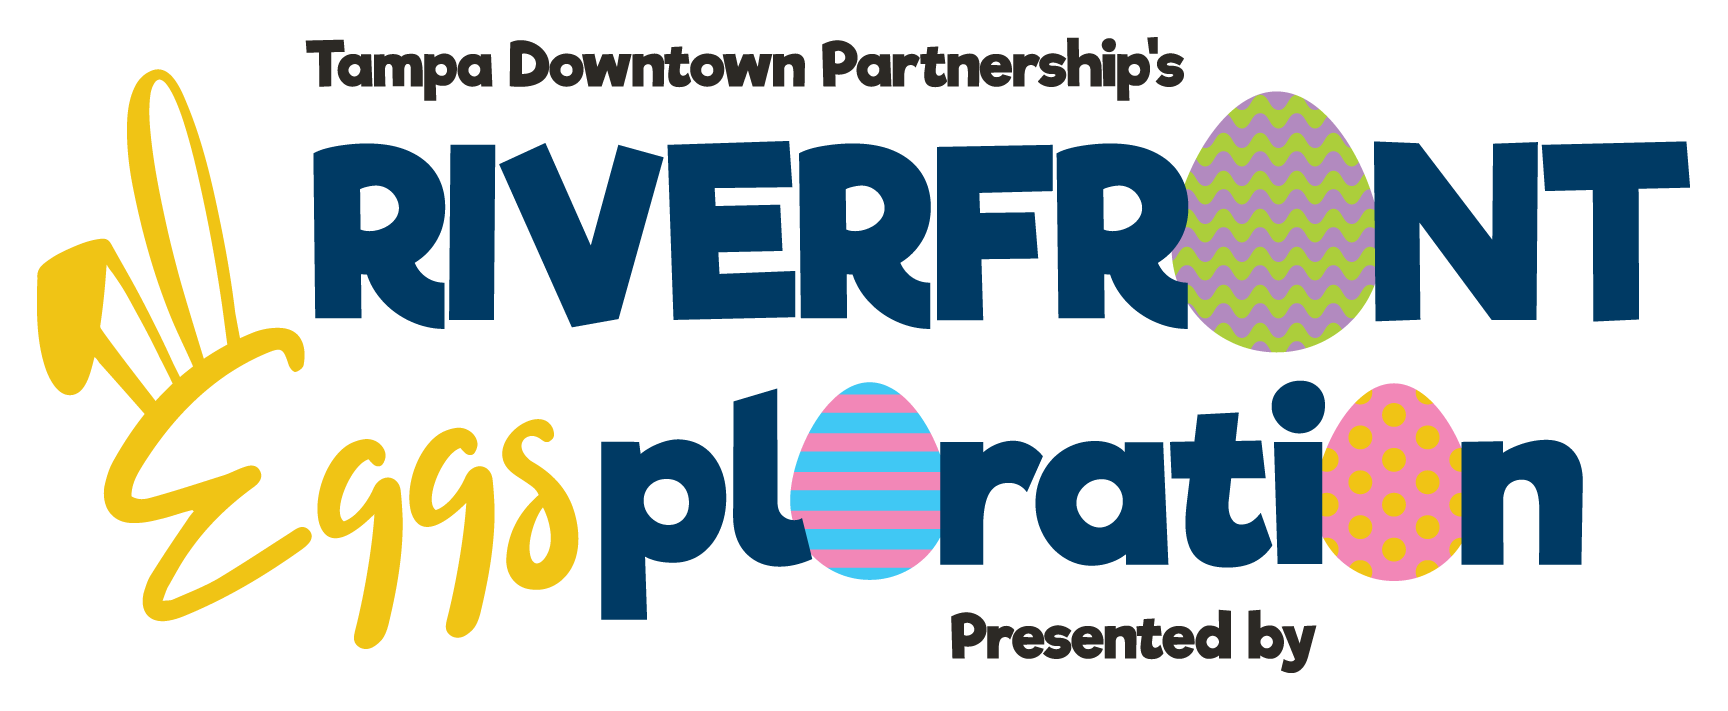 Riverfront Eggsploration Logo.png